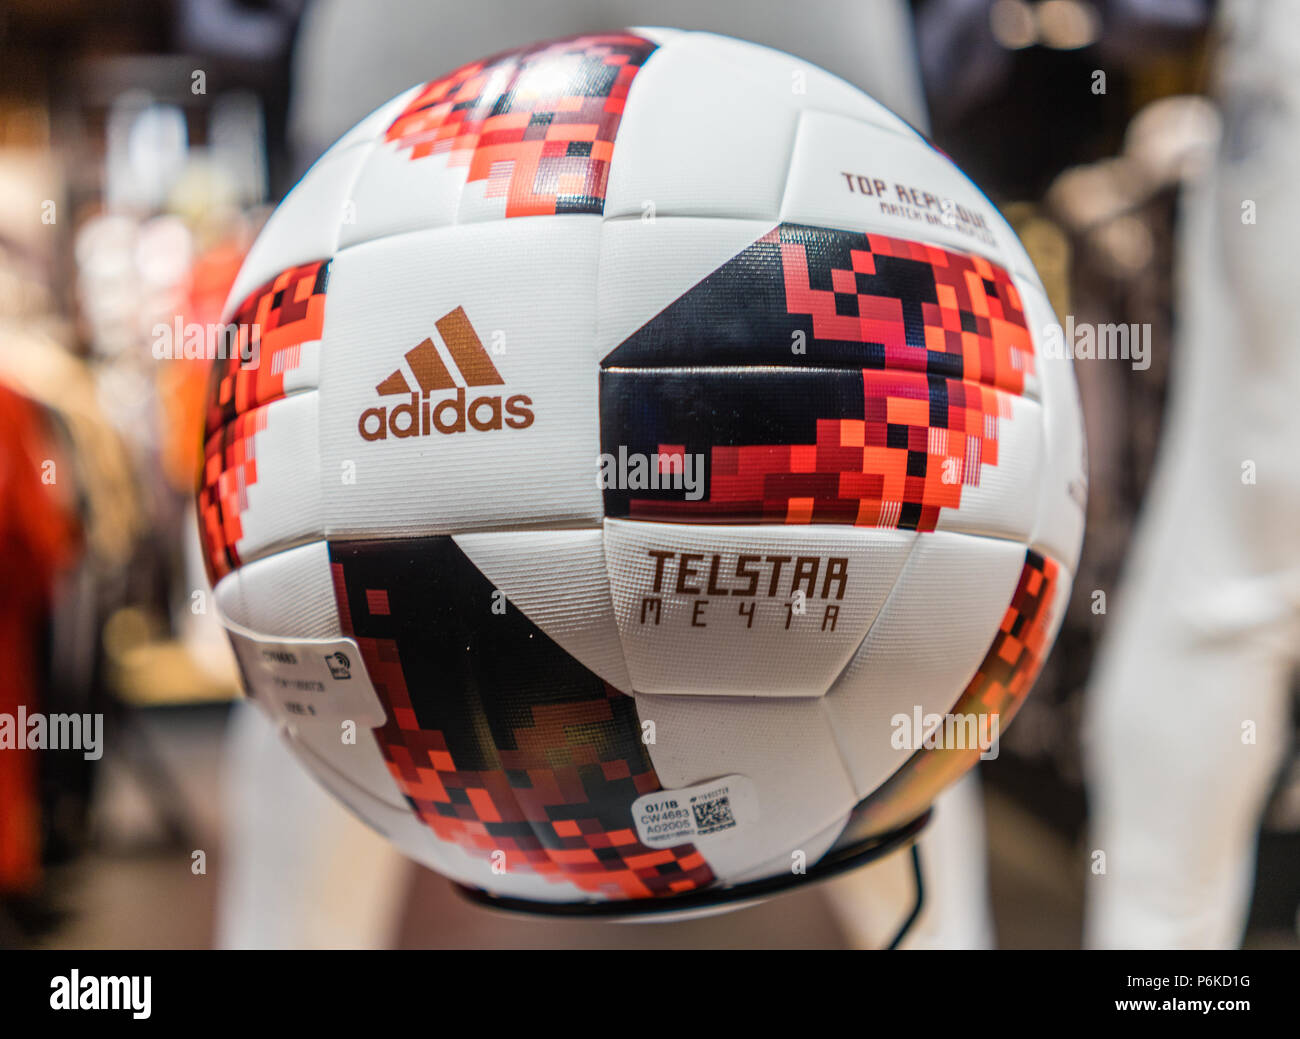 Juni 30, 2018. Der offizielle Ball für die FIFA Fußball-Weltmeisterschaft 2018  Fußball-Endspiel Spiele Adidas Telstar Mechta Stockfotografie - Alamy